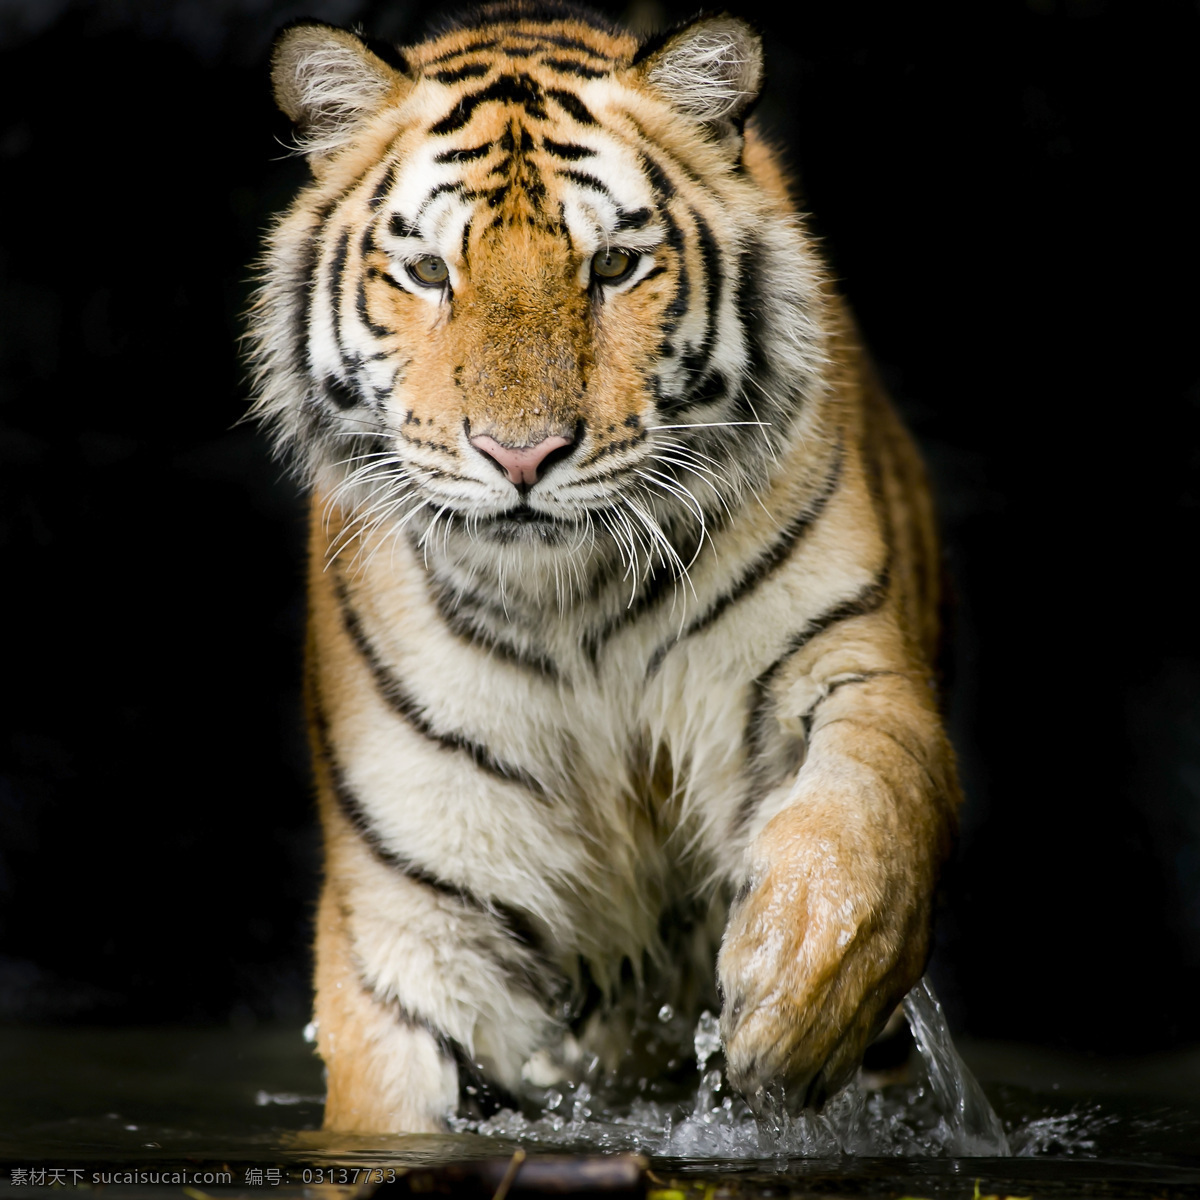 老虎 猫科动物 野生 雪地 东北虎 保护动物 濒危野生动物 百兽之王 动物 非人工驯养 野生动物 生物世界